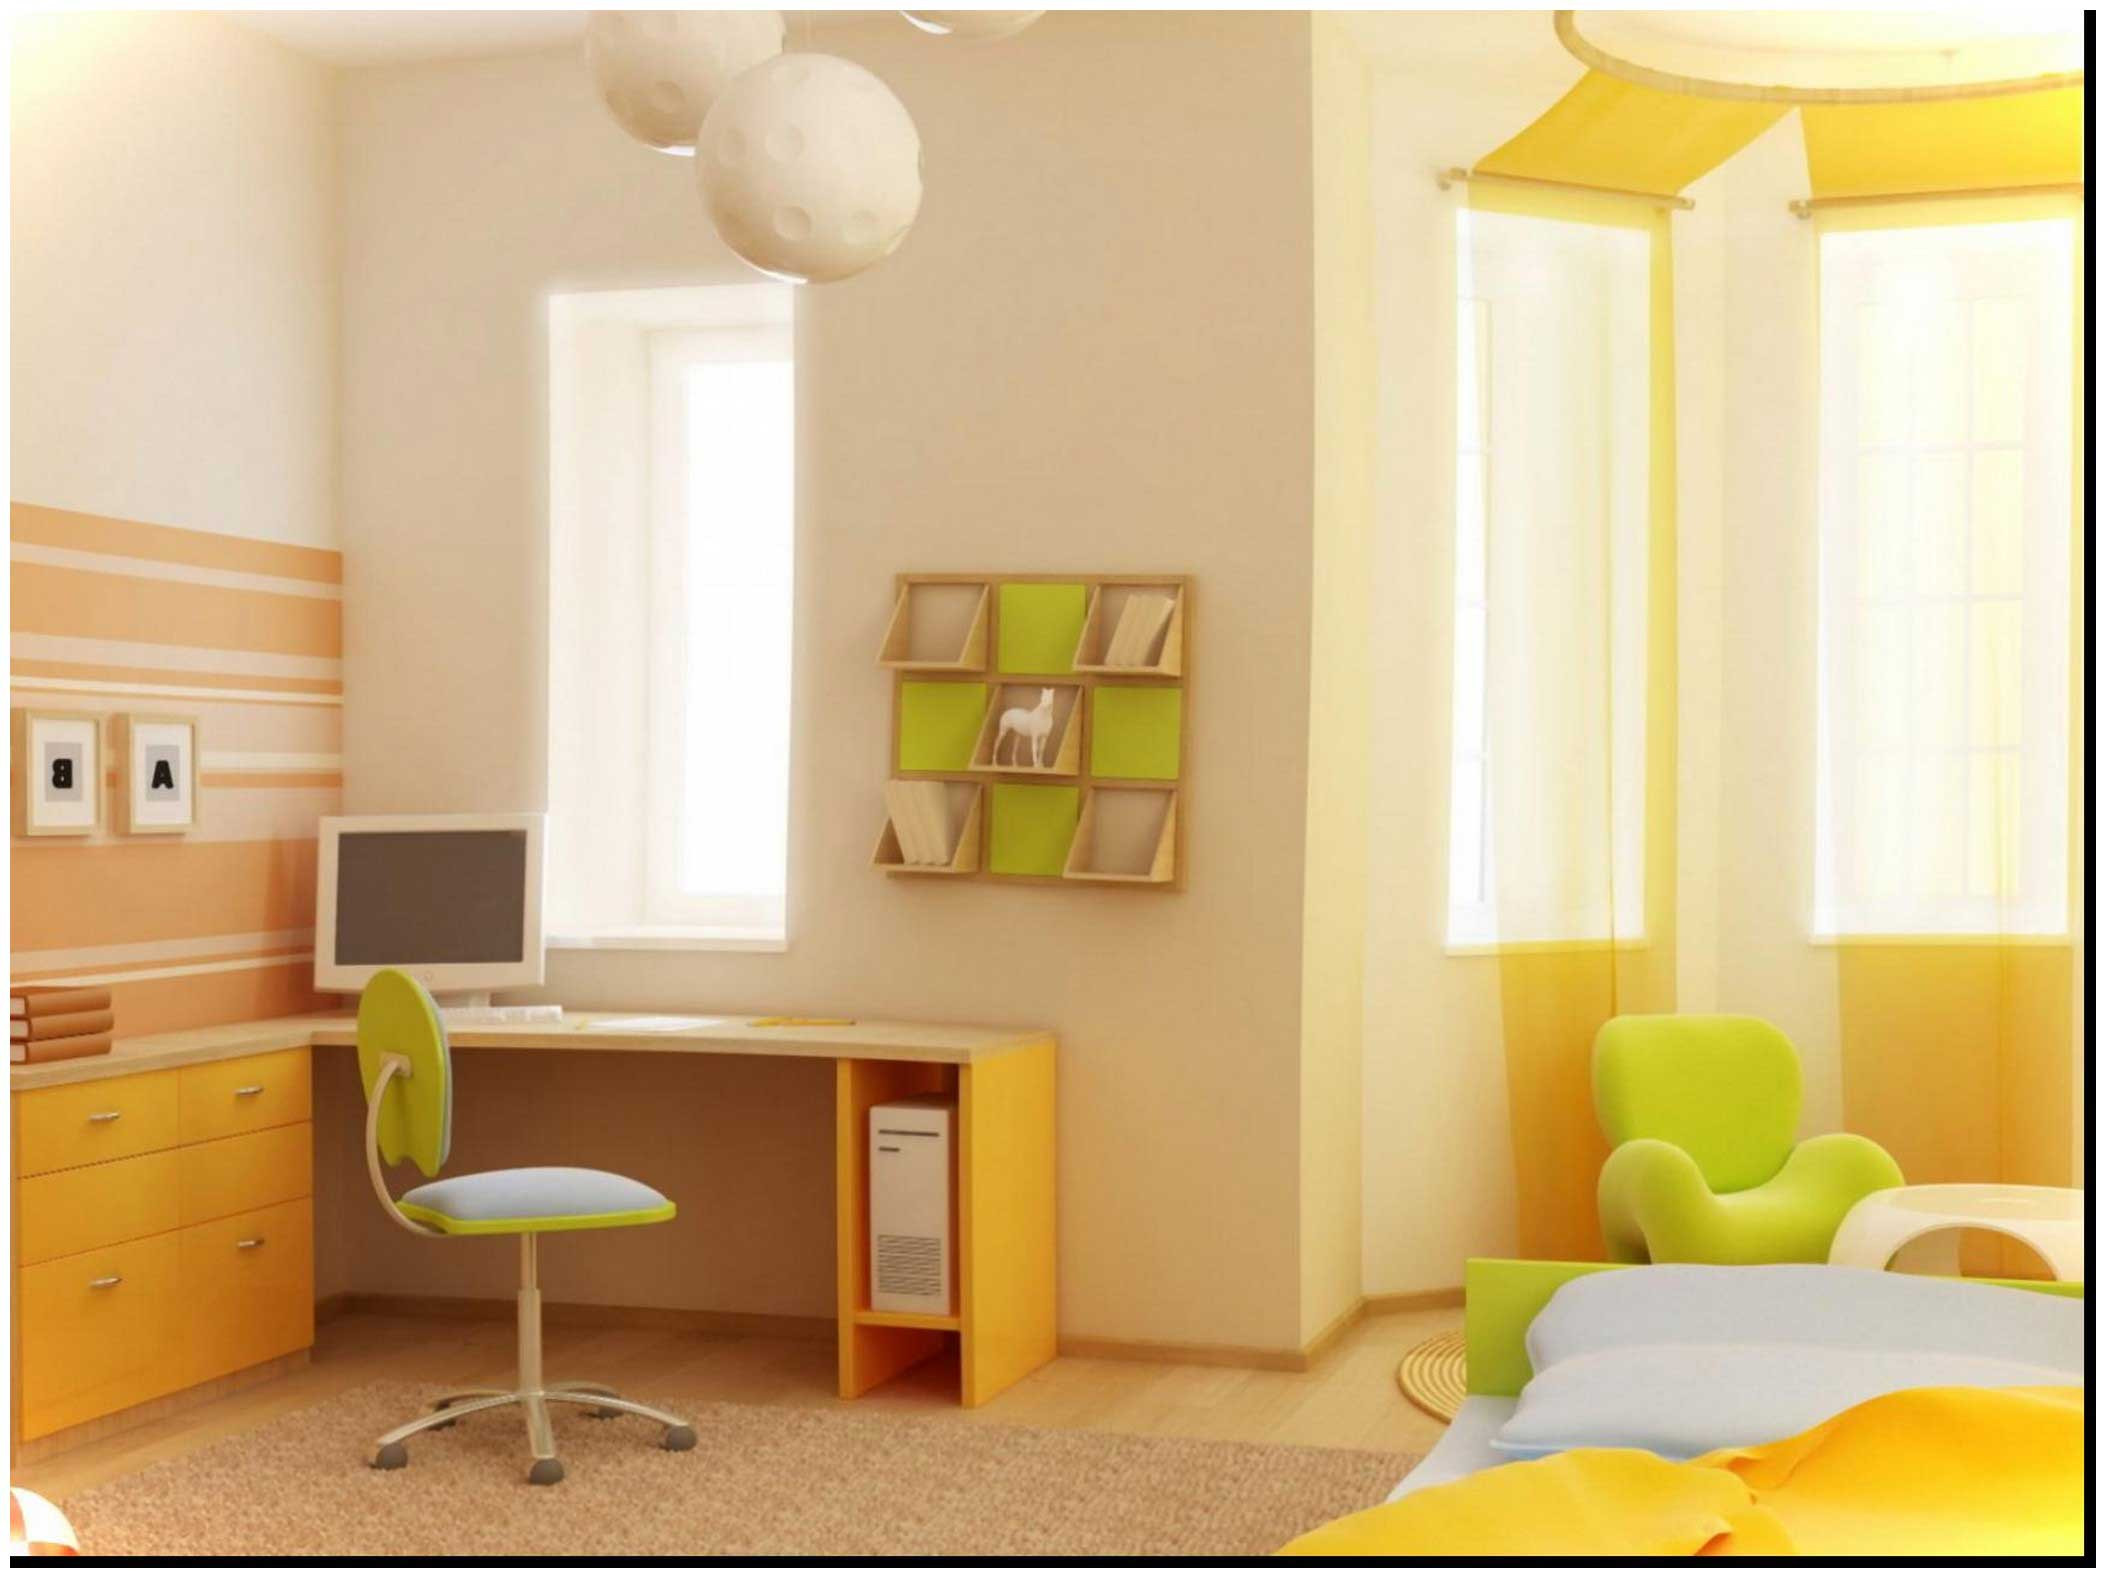 Latest Living Room Paint Colors
 Asian Paints Living Room Colours Shades Latest Paint Color